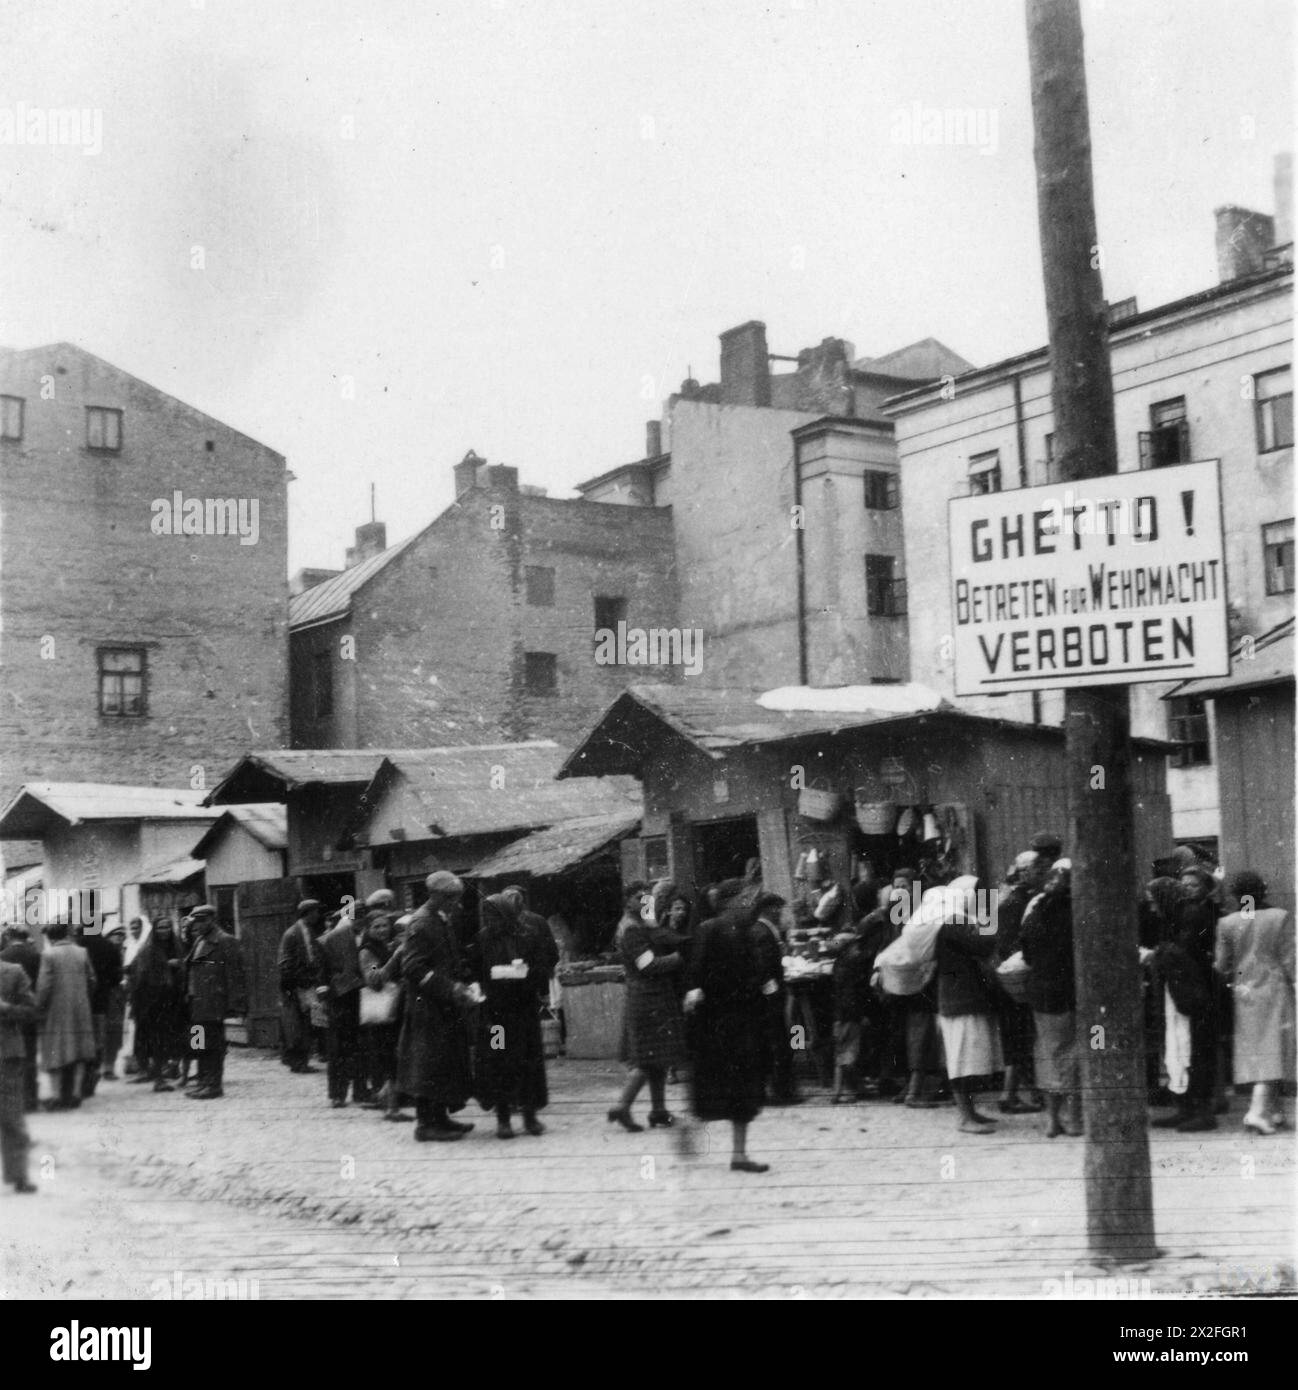 L'OCCUPATION ALLEMANDE DE LA POLOGNE, 1941-1945 - photographie prise par un soldat de la 1re compagnie du 310e bataillon de l'armée territoriale (bataillon Landesschützen 310) alors que l'unité était stationnée dans la ville voisine de Chełm entre le 8 août et le 1er octobre 1941. Juifs shopping dans un marché de rue dans le ghetto de Lublin, probablement près de la porte d'entrée car il y a un panneau 'Ghetto! Betreten für Wehrmacht verboten - entrée pour l'armée allemande visible Wermacht interdite Banque D'Images